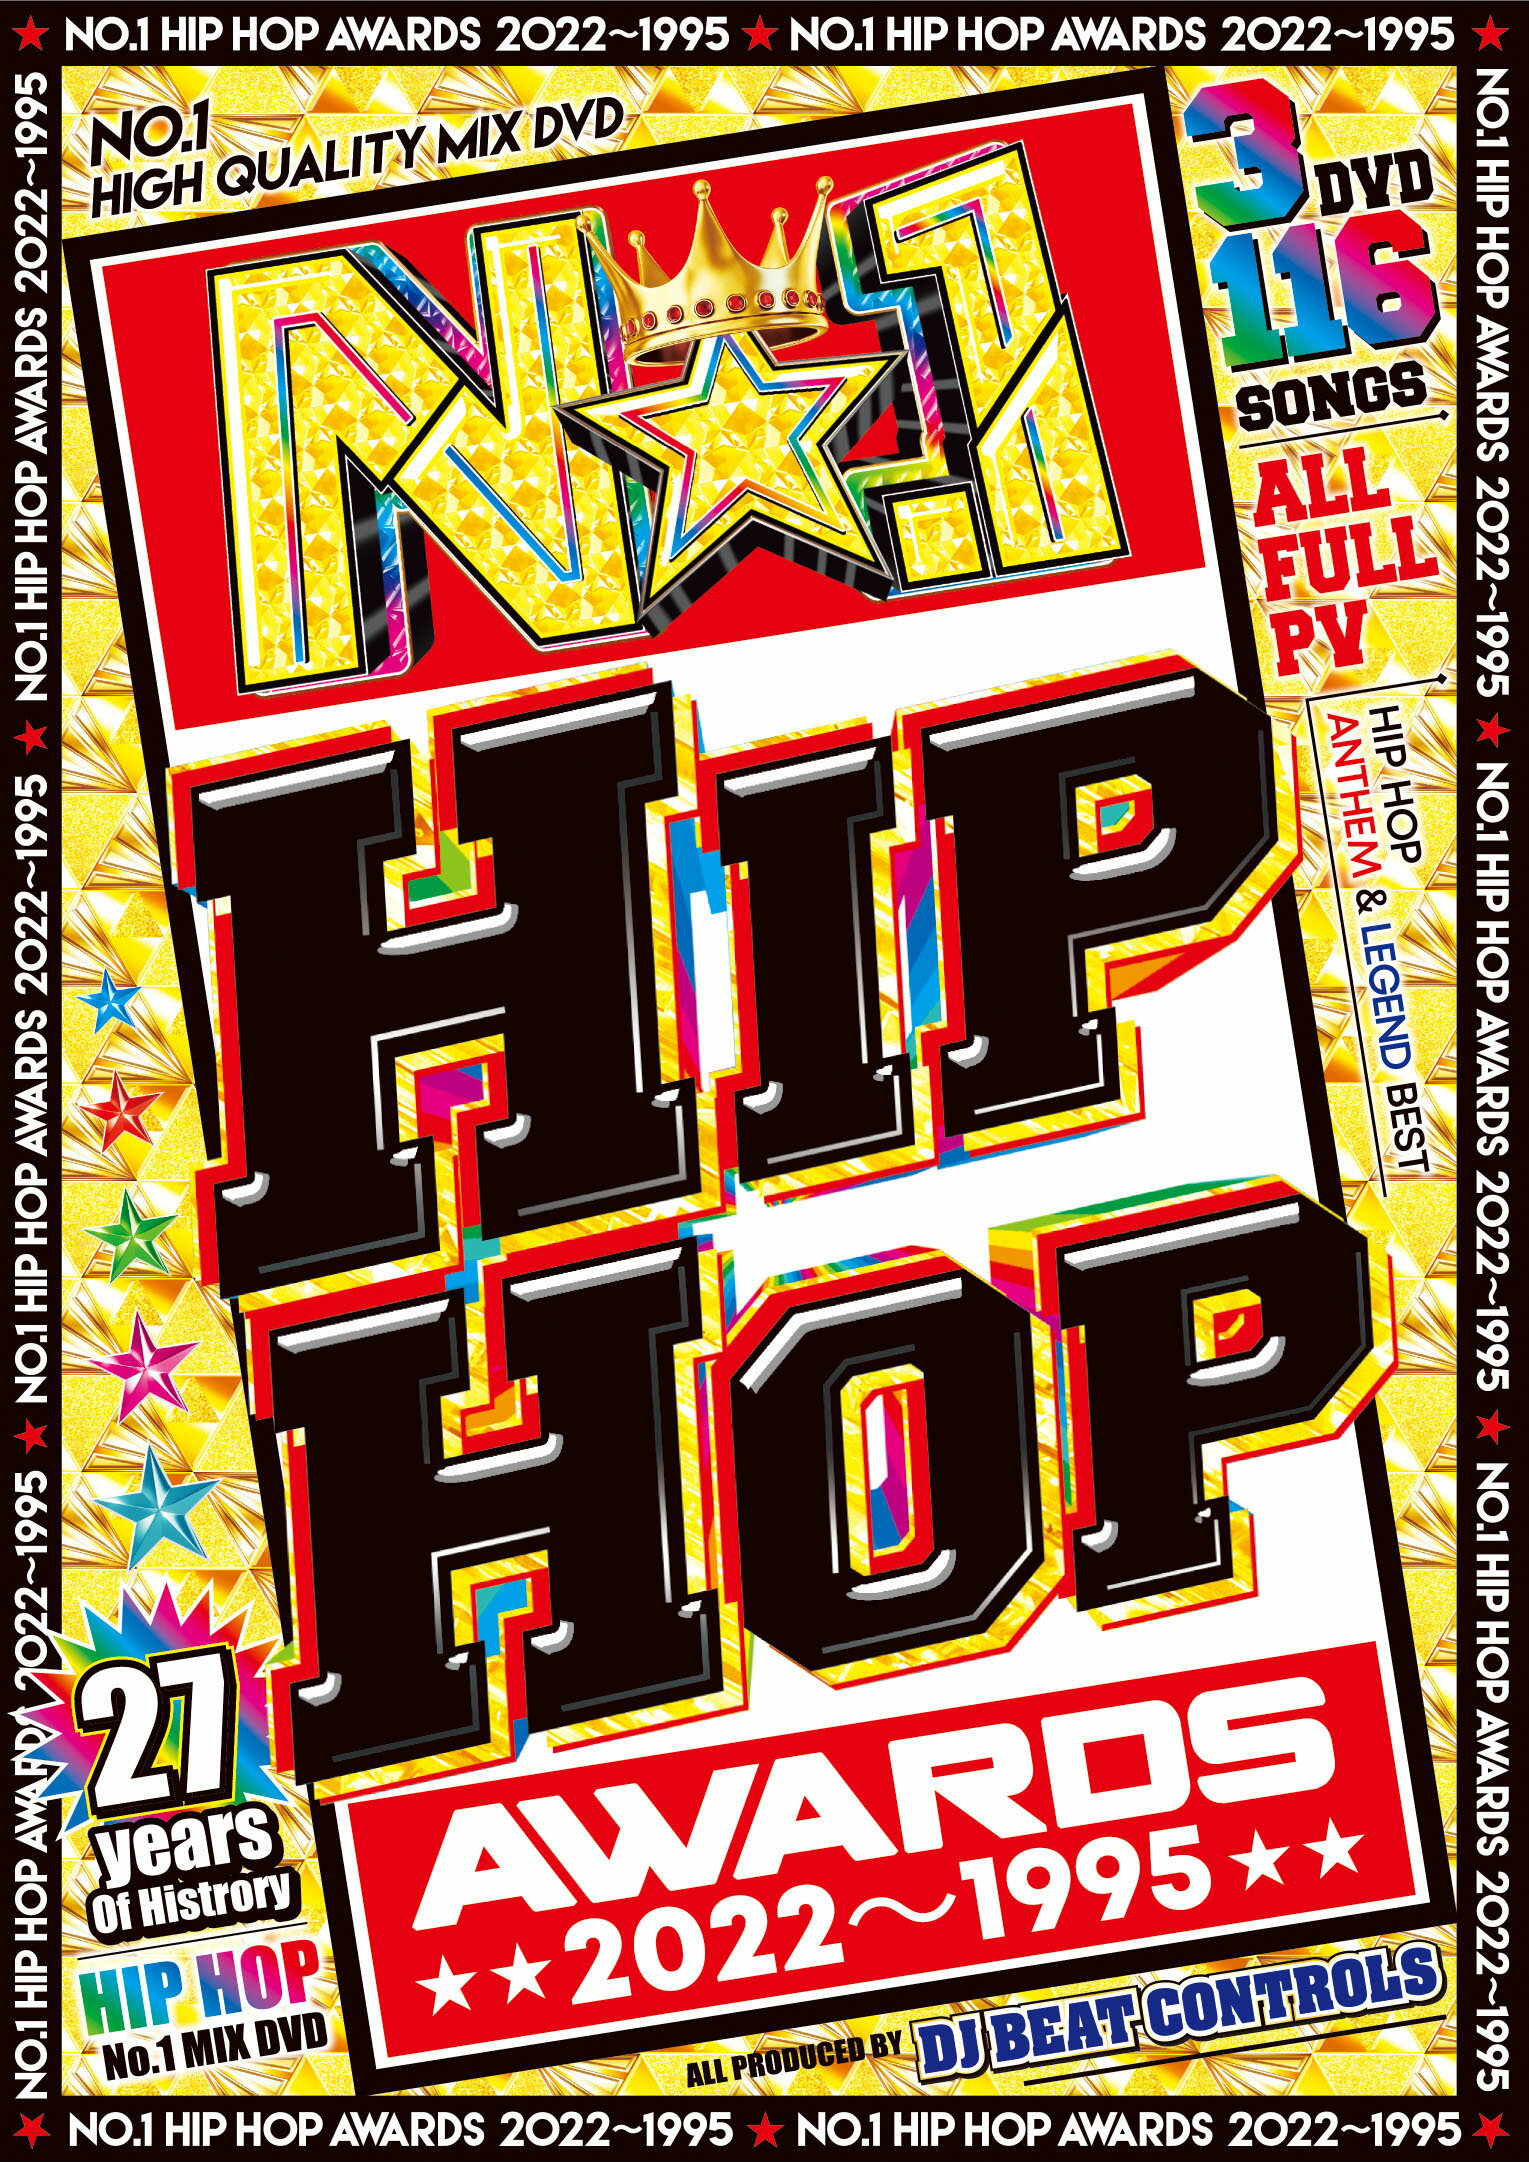 【洋楽DVD】永久保存盤 HIPHOPの伝説的な名曲まで収録 DJ Beat Controls / No.1 HIPHOP Awards 2022-1995 3枚組 全116曲フルムービー